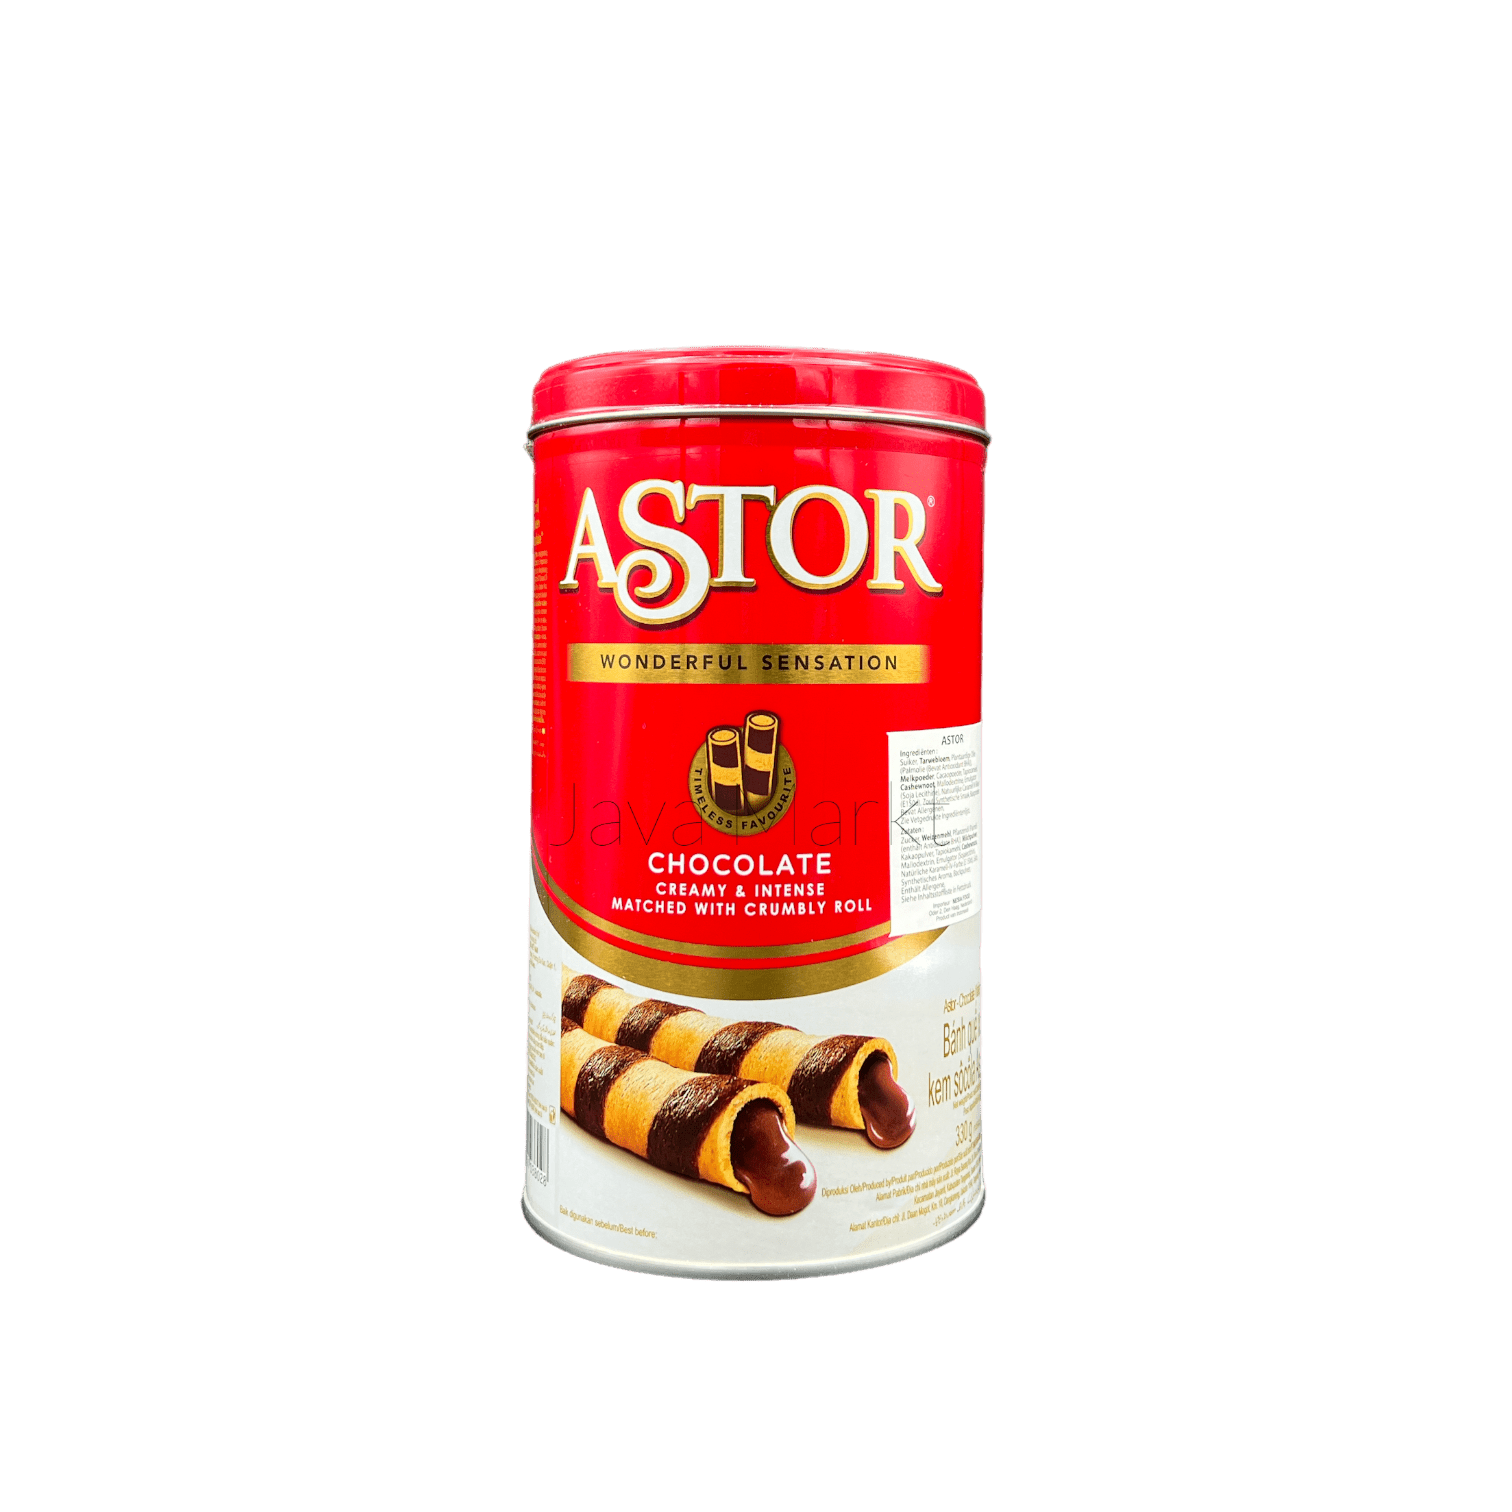 ASTOR Chocolate Wafer Roll Kaleng - Java Markt